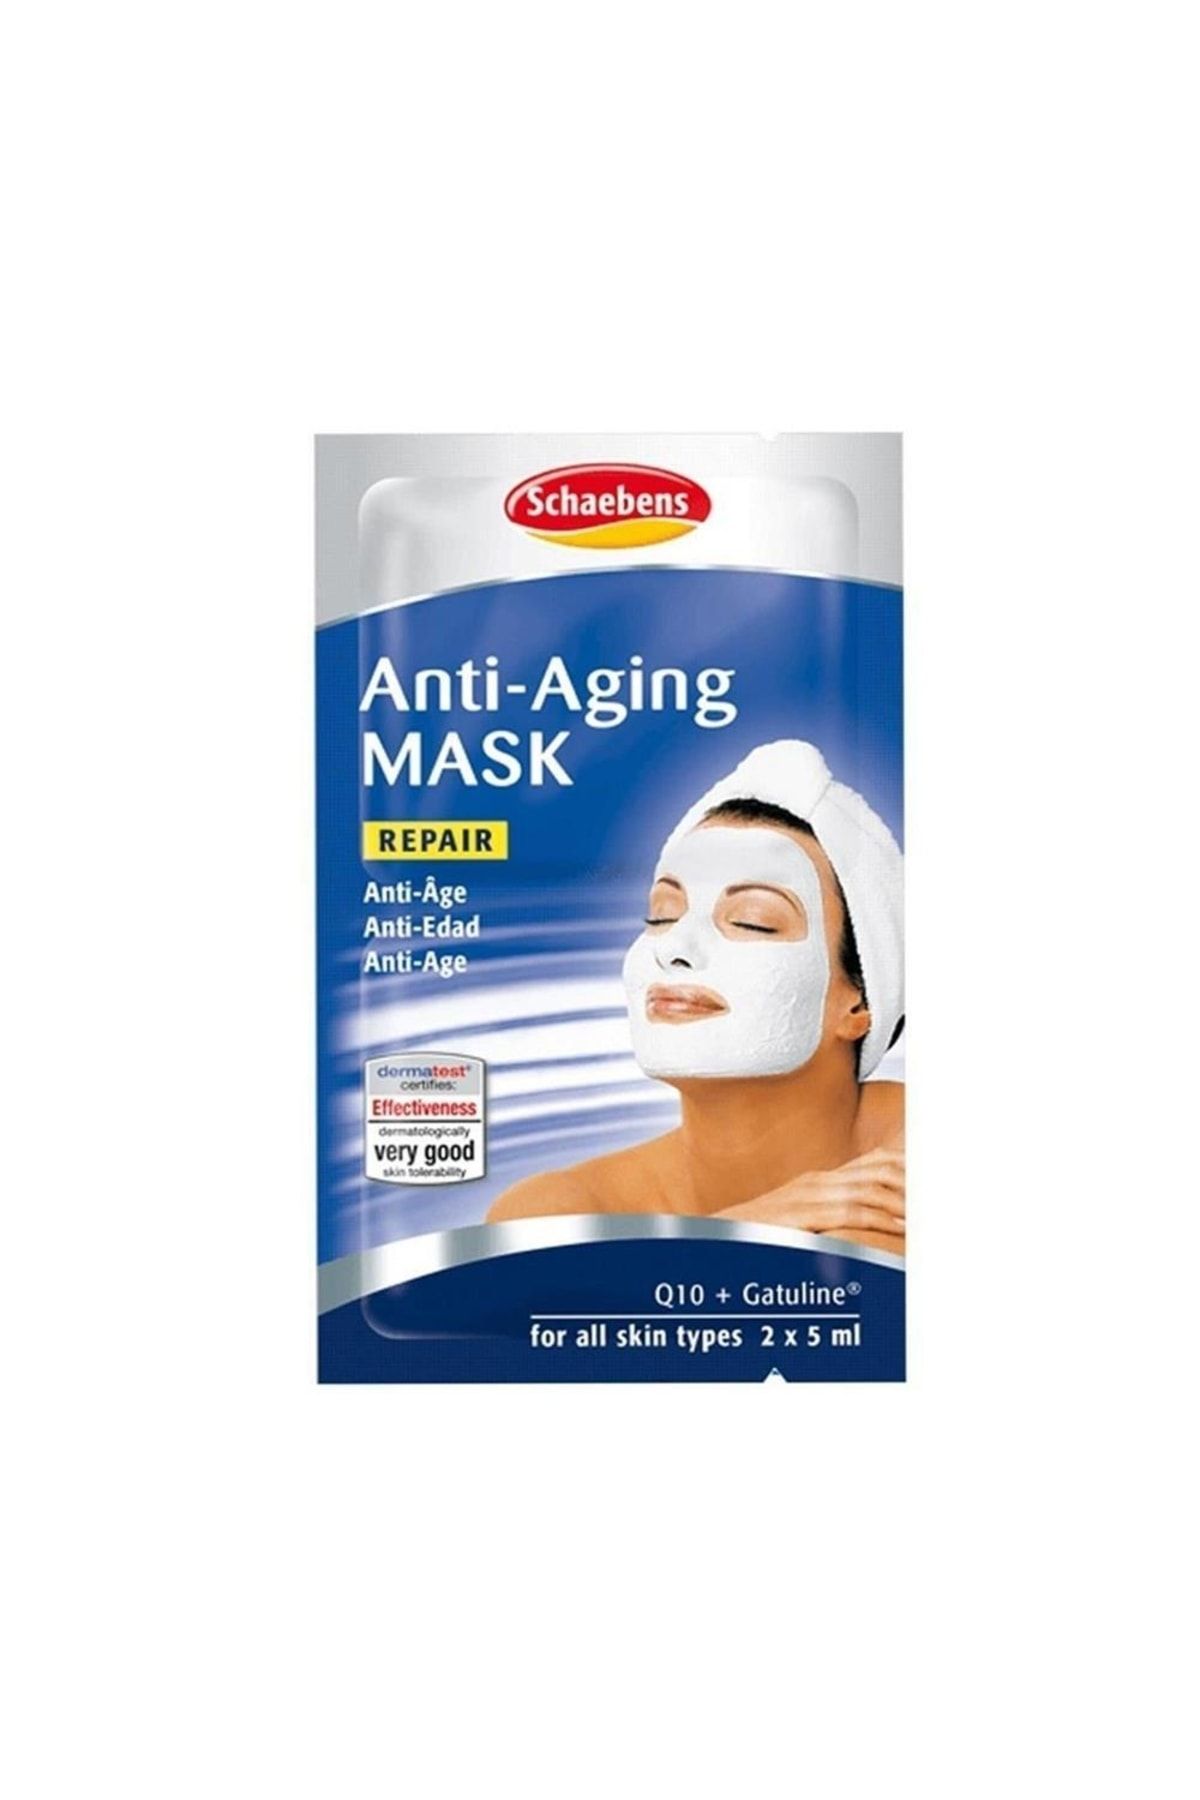 Schaebens Yaşlılık Etkilerini Azaltmaya Yardımcı Maske - Anti Aging Q10 Mask 2 X 5 Ml 4003573100401